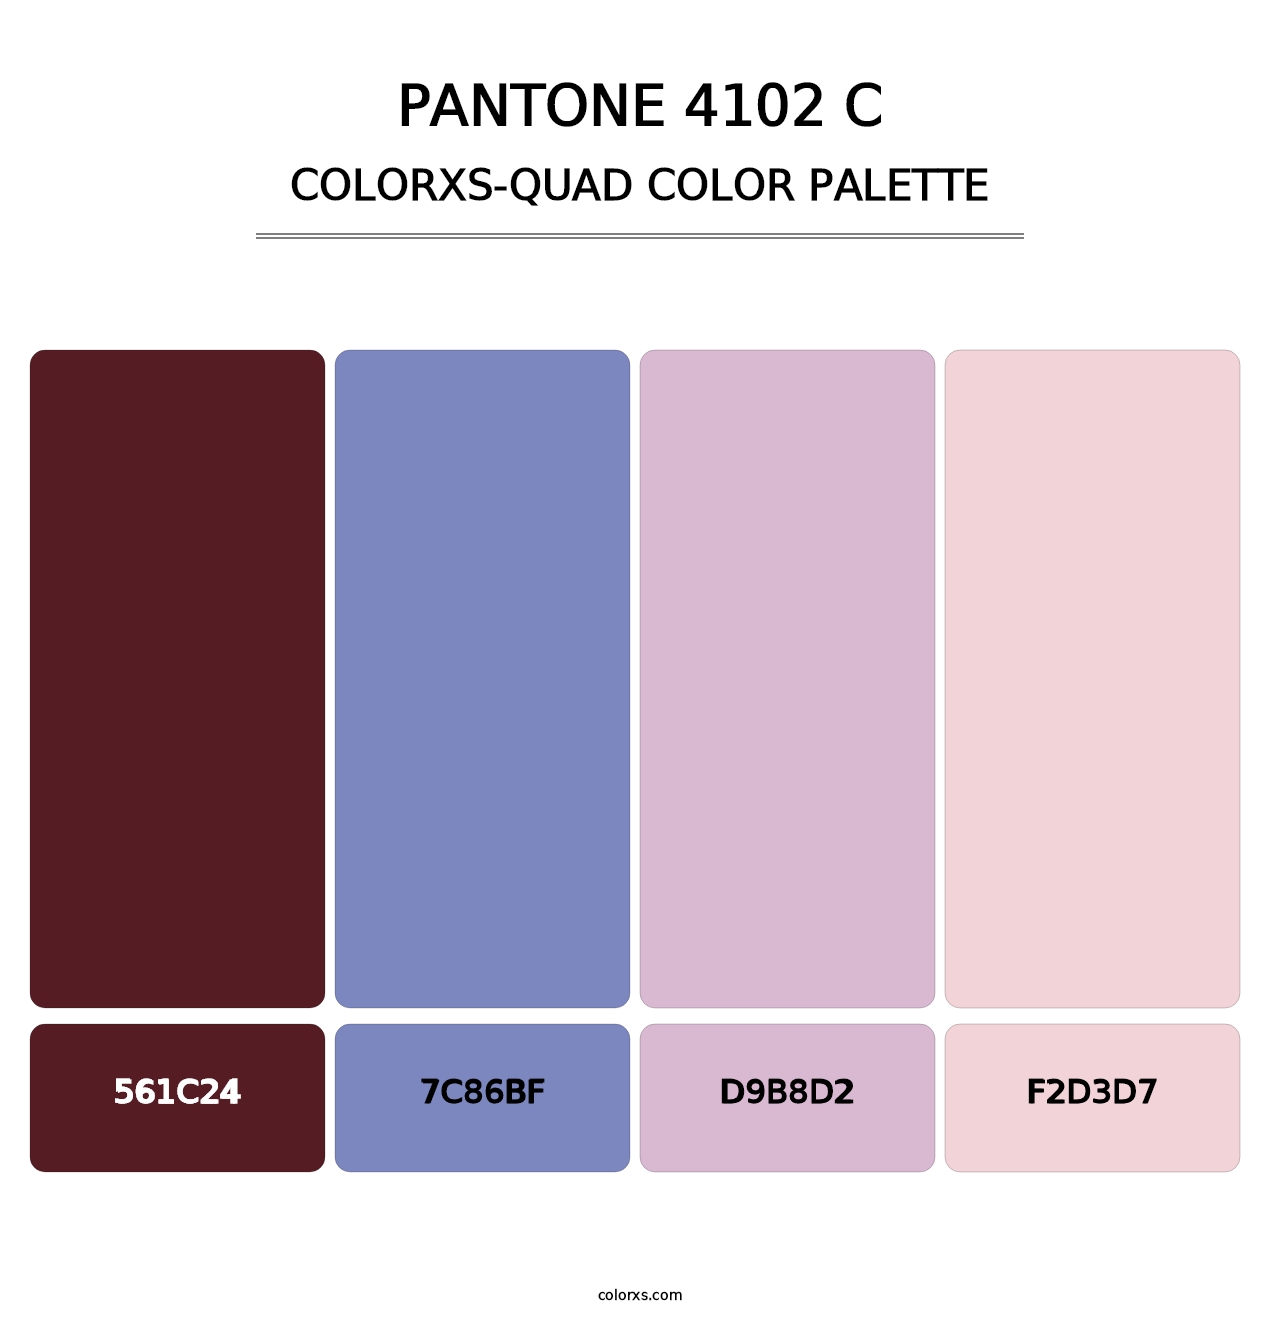 PANTONE 4102 C - Colorxs Quad Palette